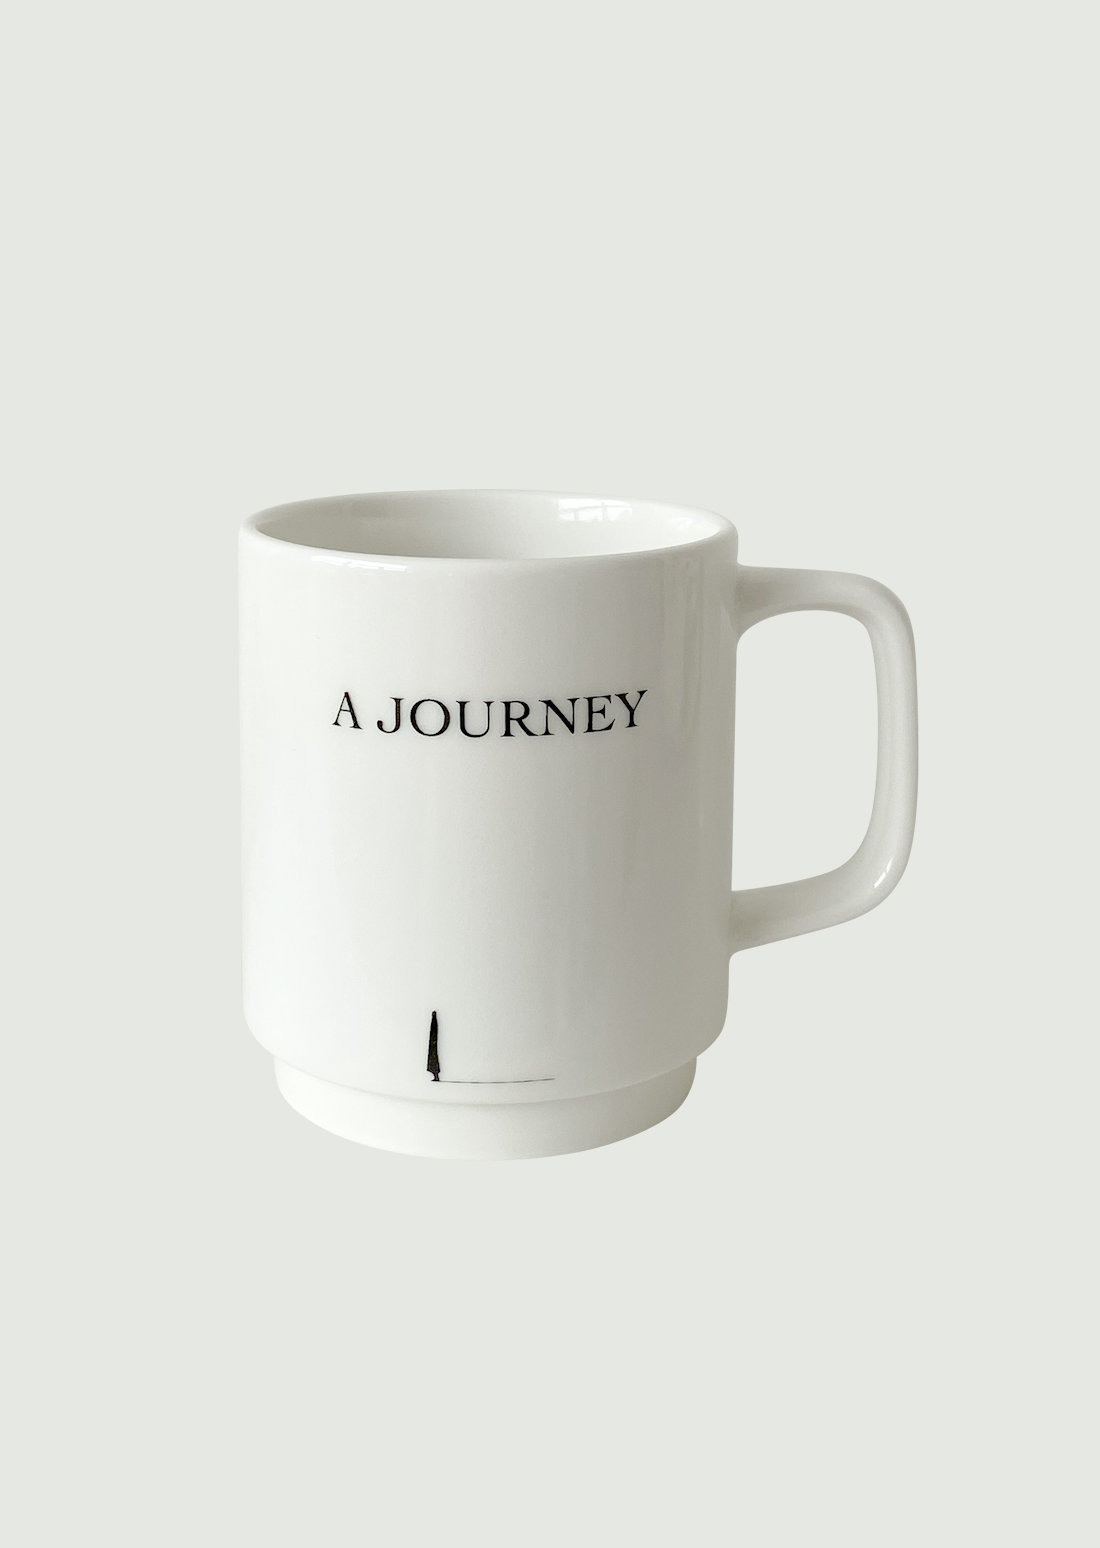 “A JOURNEY” ceramic mug cup